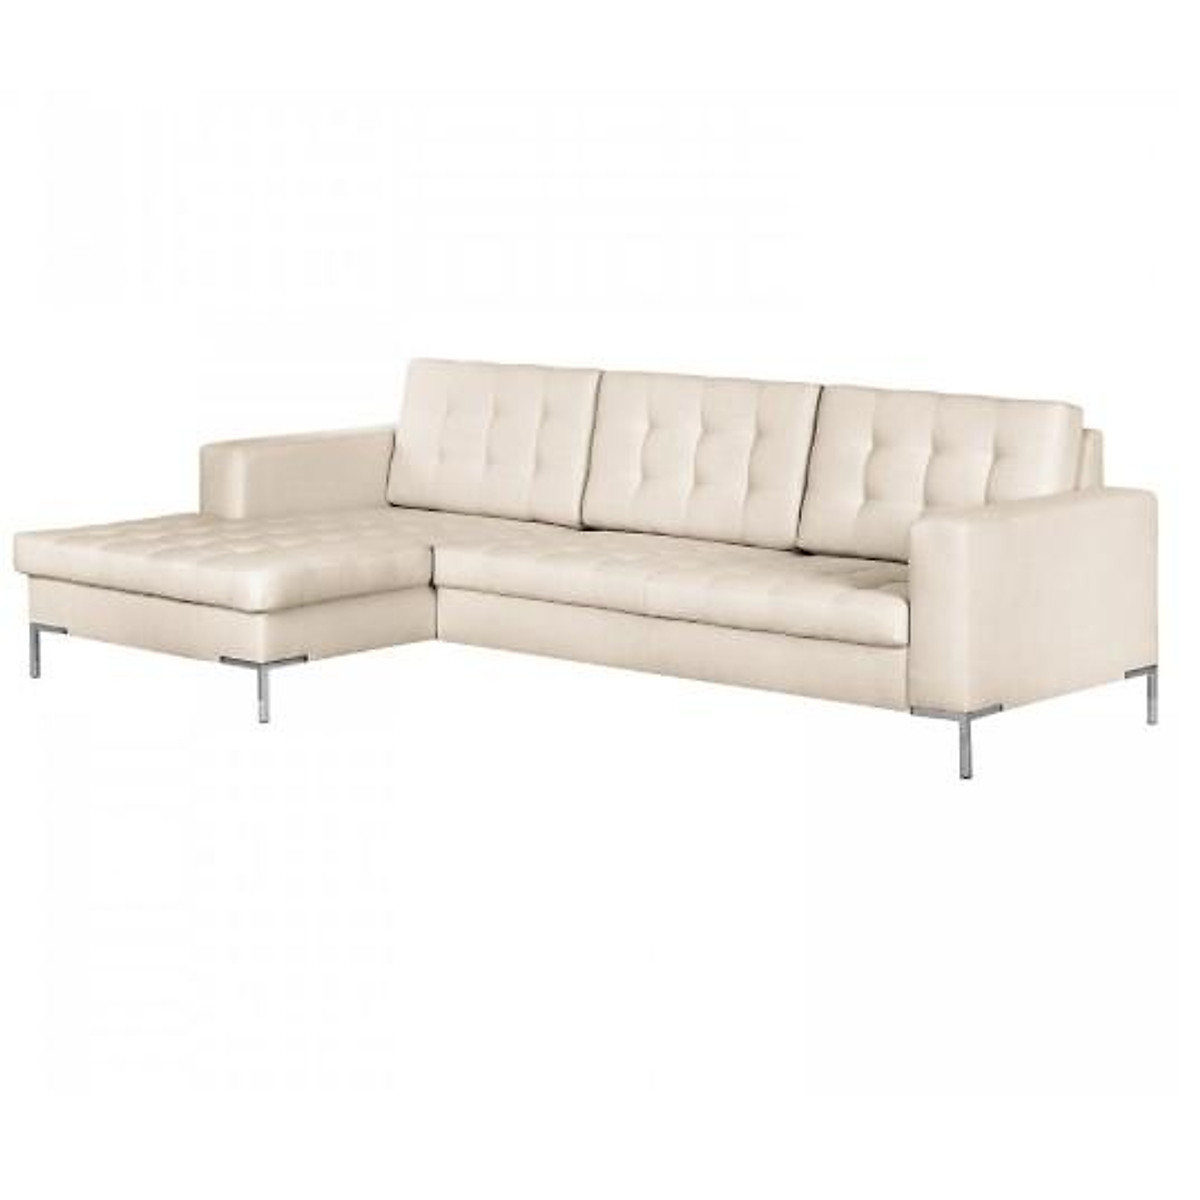 Sofa da góc L Tundo 2m5 x 1m6 màu kem nhạt nệm rút